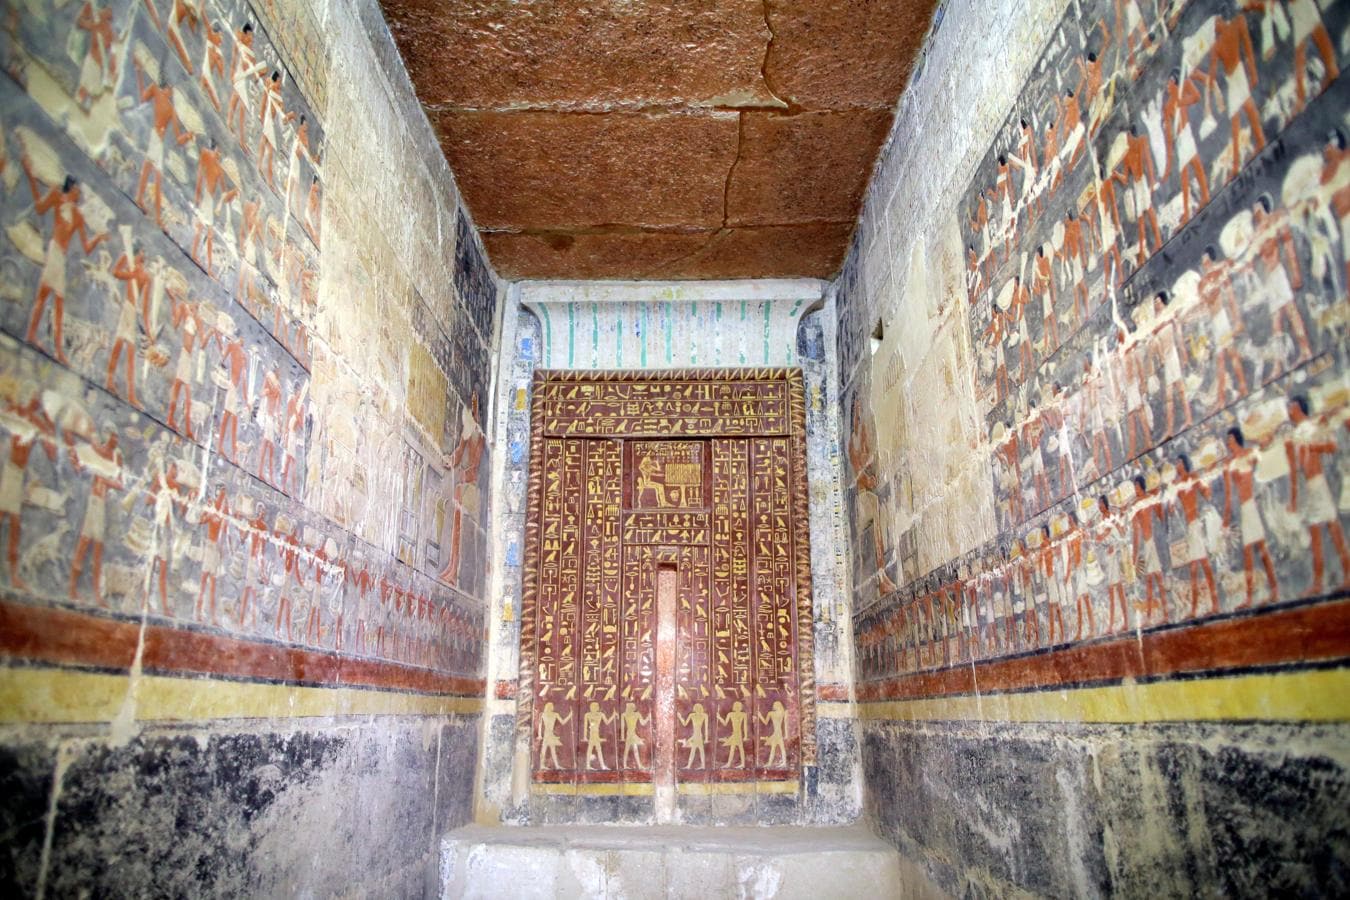 La tumba, descubierta en 1940, se ubica a un centenar de metros de la pirámide escalonada de Zoser, el monumento de piedra más antiguo del mundo y el más importante de Saqara. El Ministerio de Antiguades de Egipto ha restaurado las pinturas de la tumba. 